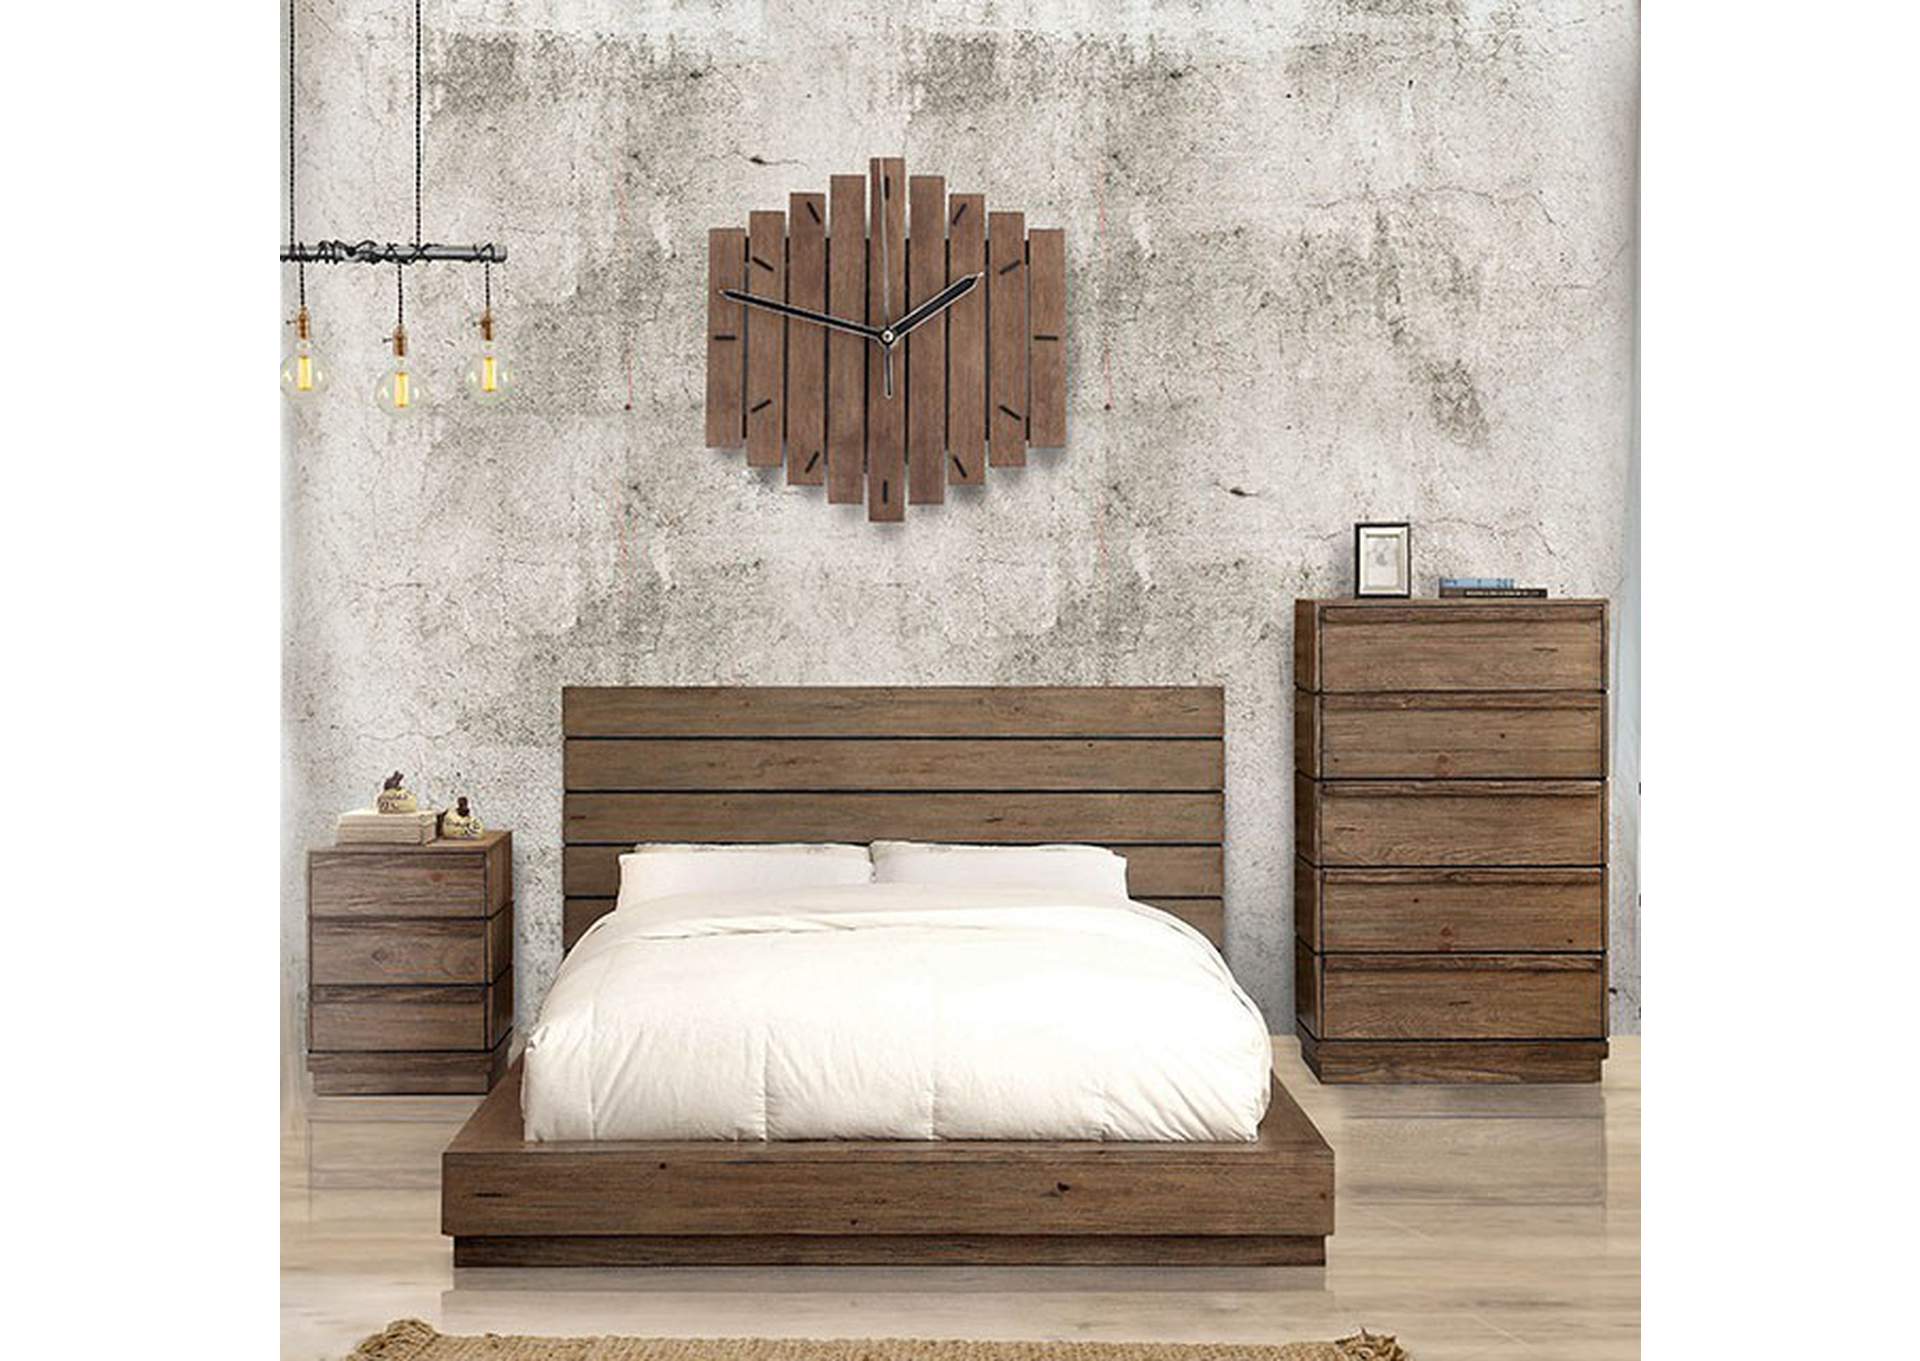 Coimbra Rustic Natural Tone Queen Bed,Furniture of America